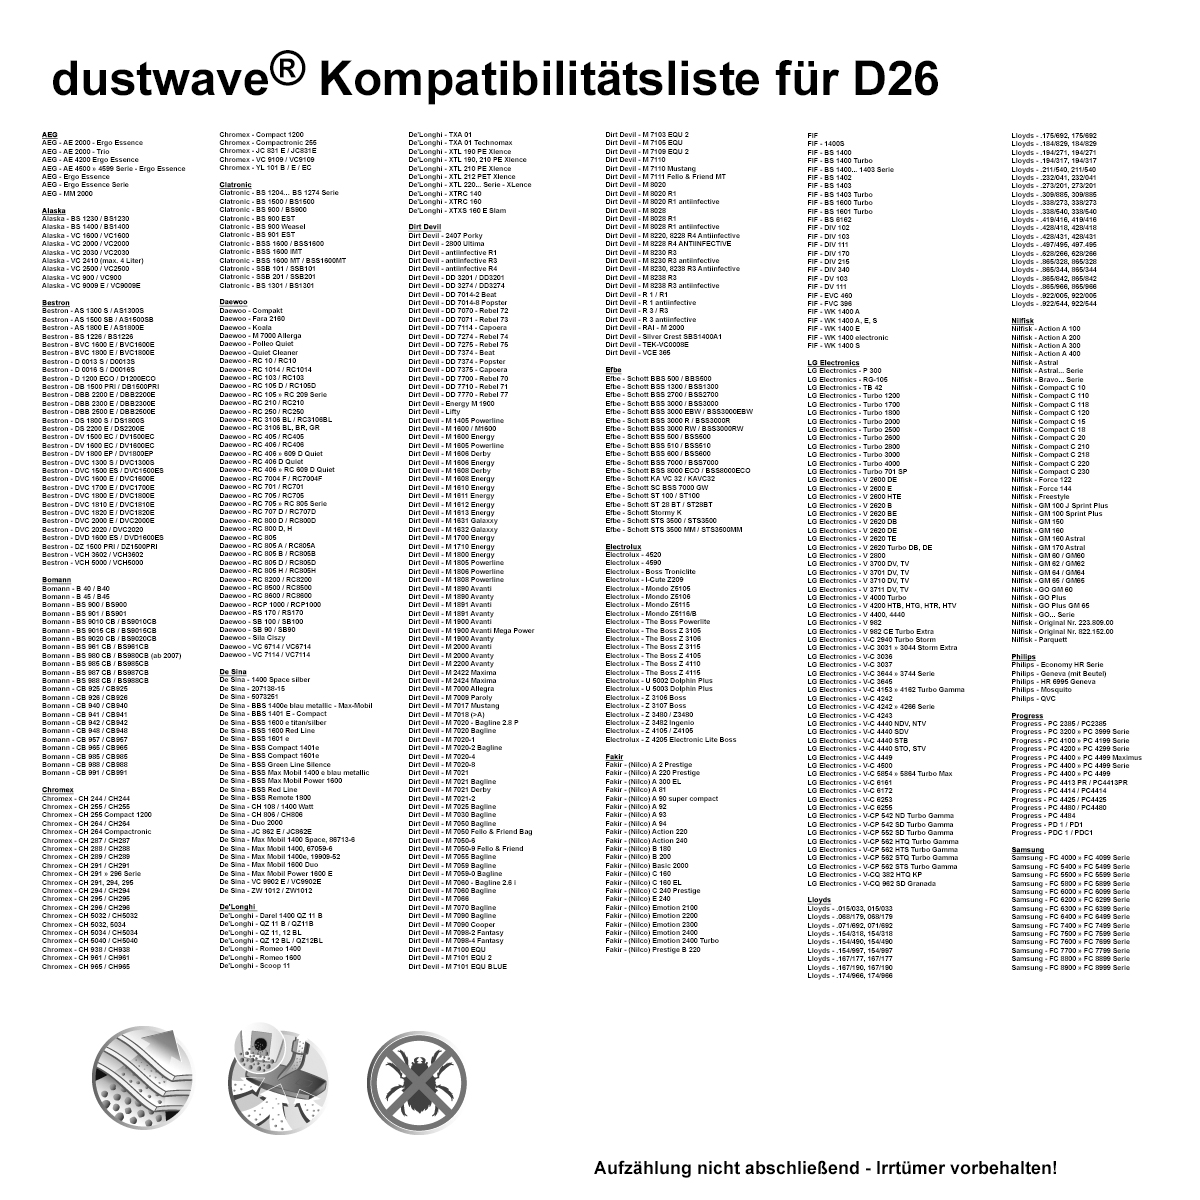 Dustwave® 1 Staubsaugerbeutel für Clean-Maxx Energy Plus - 8924 - hocheffizient mit Hygieneverschluss - Made in Germany